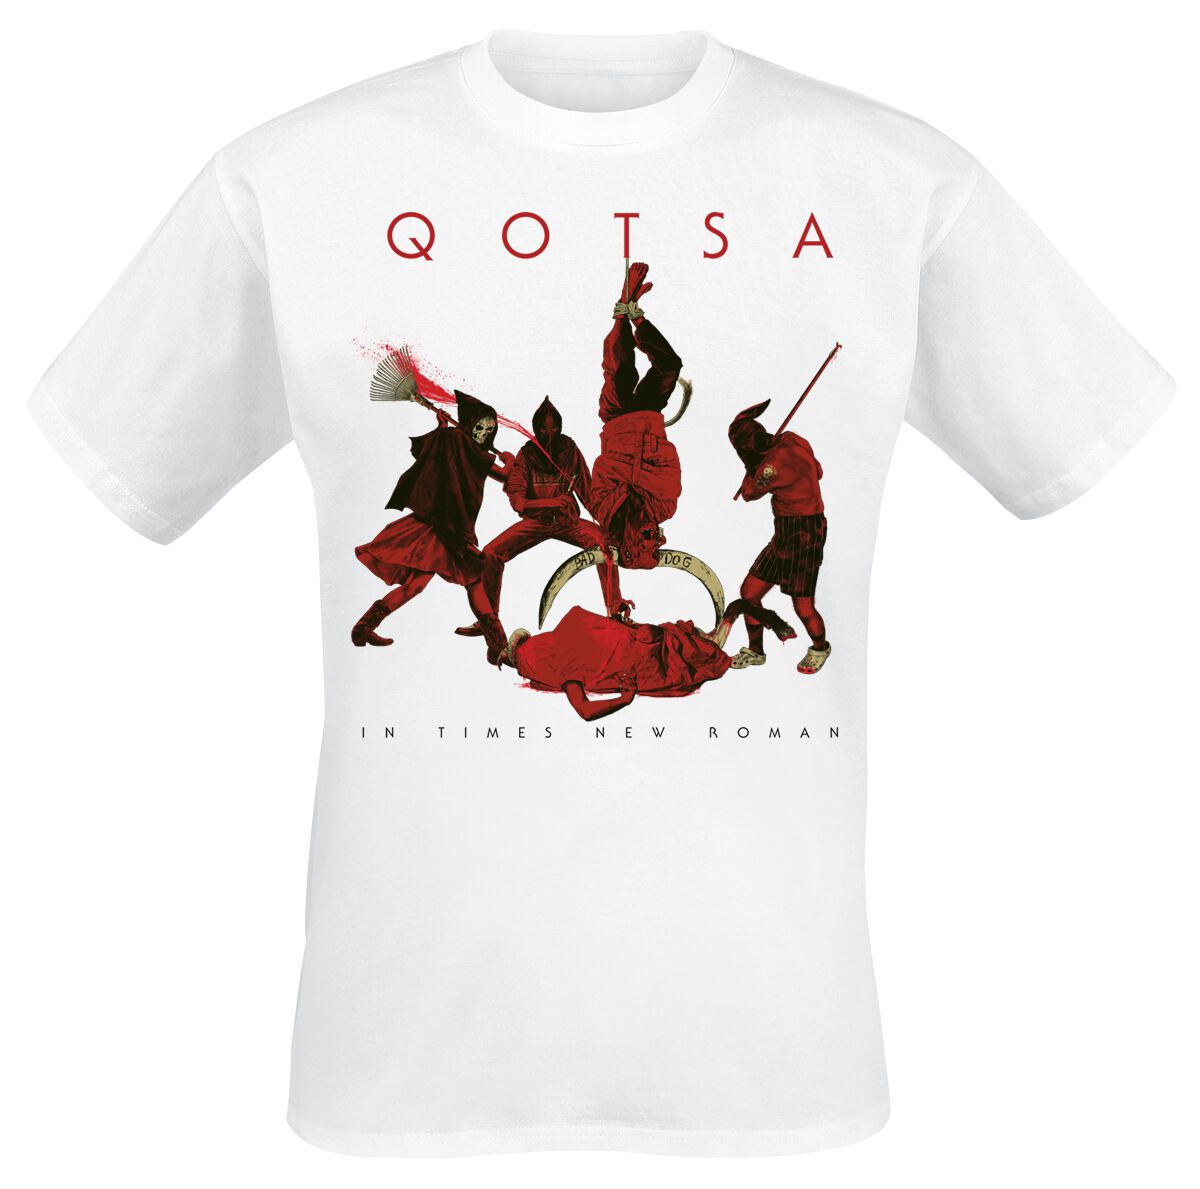 Queens Of The Stone Age T-Shirt - In Times New Roman - Emotion Sickness - S bis 3XL - für Männer - Größe XL - weiß  - Lizenziertes Merchandise!